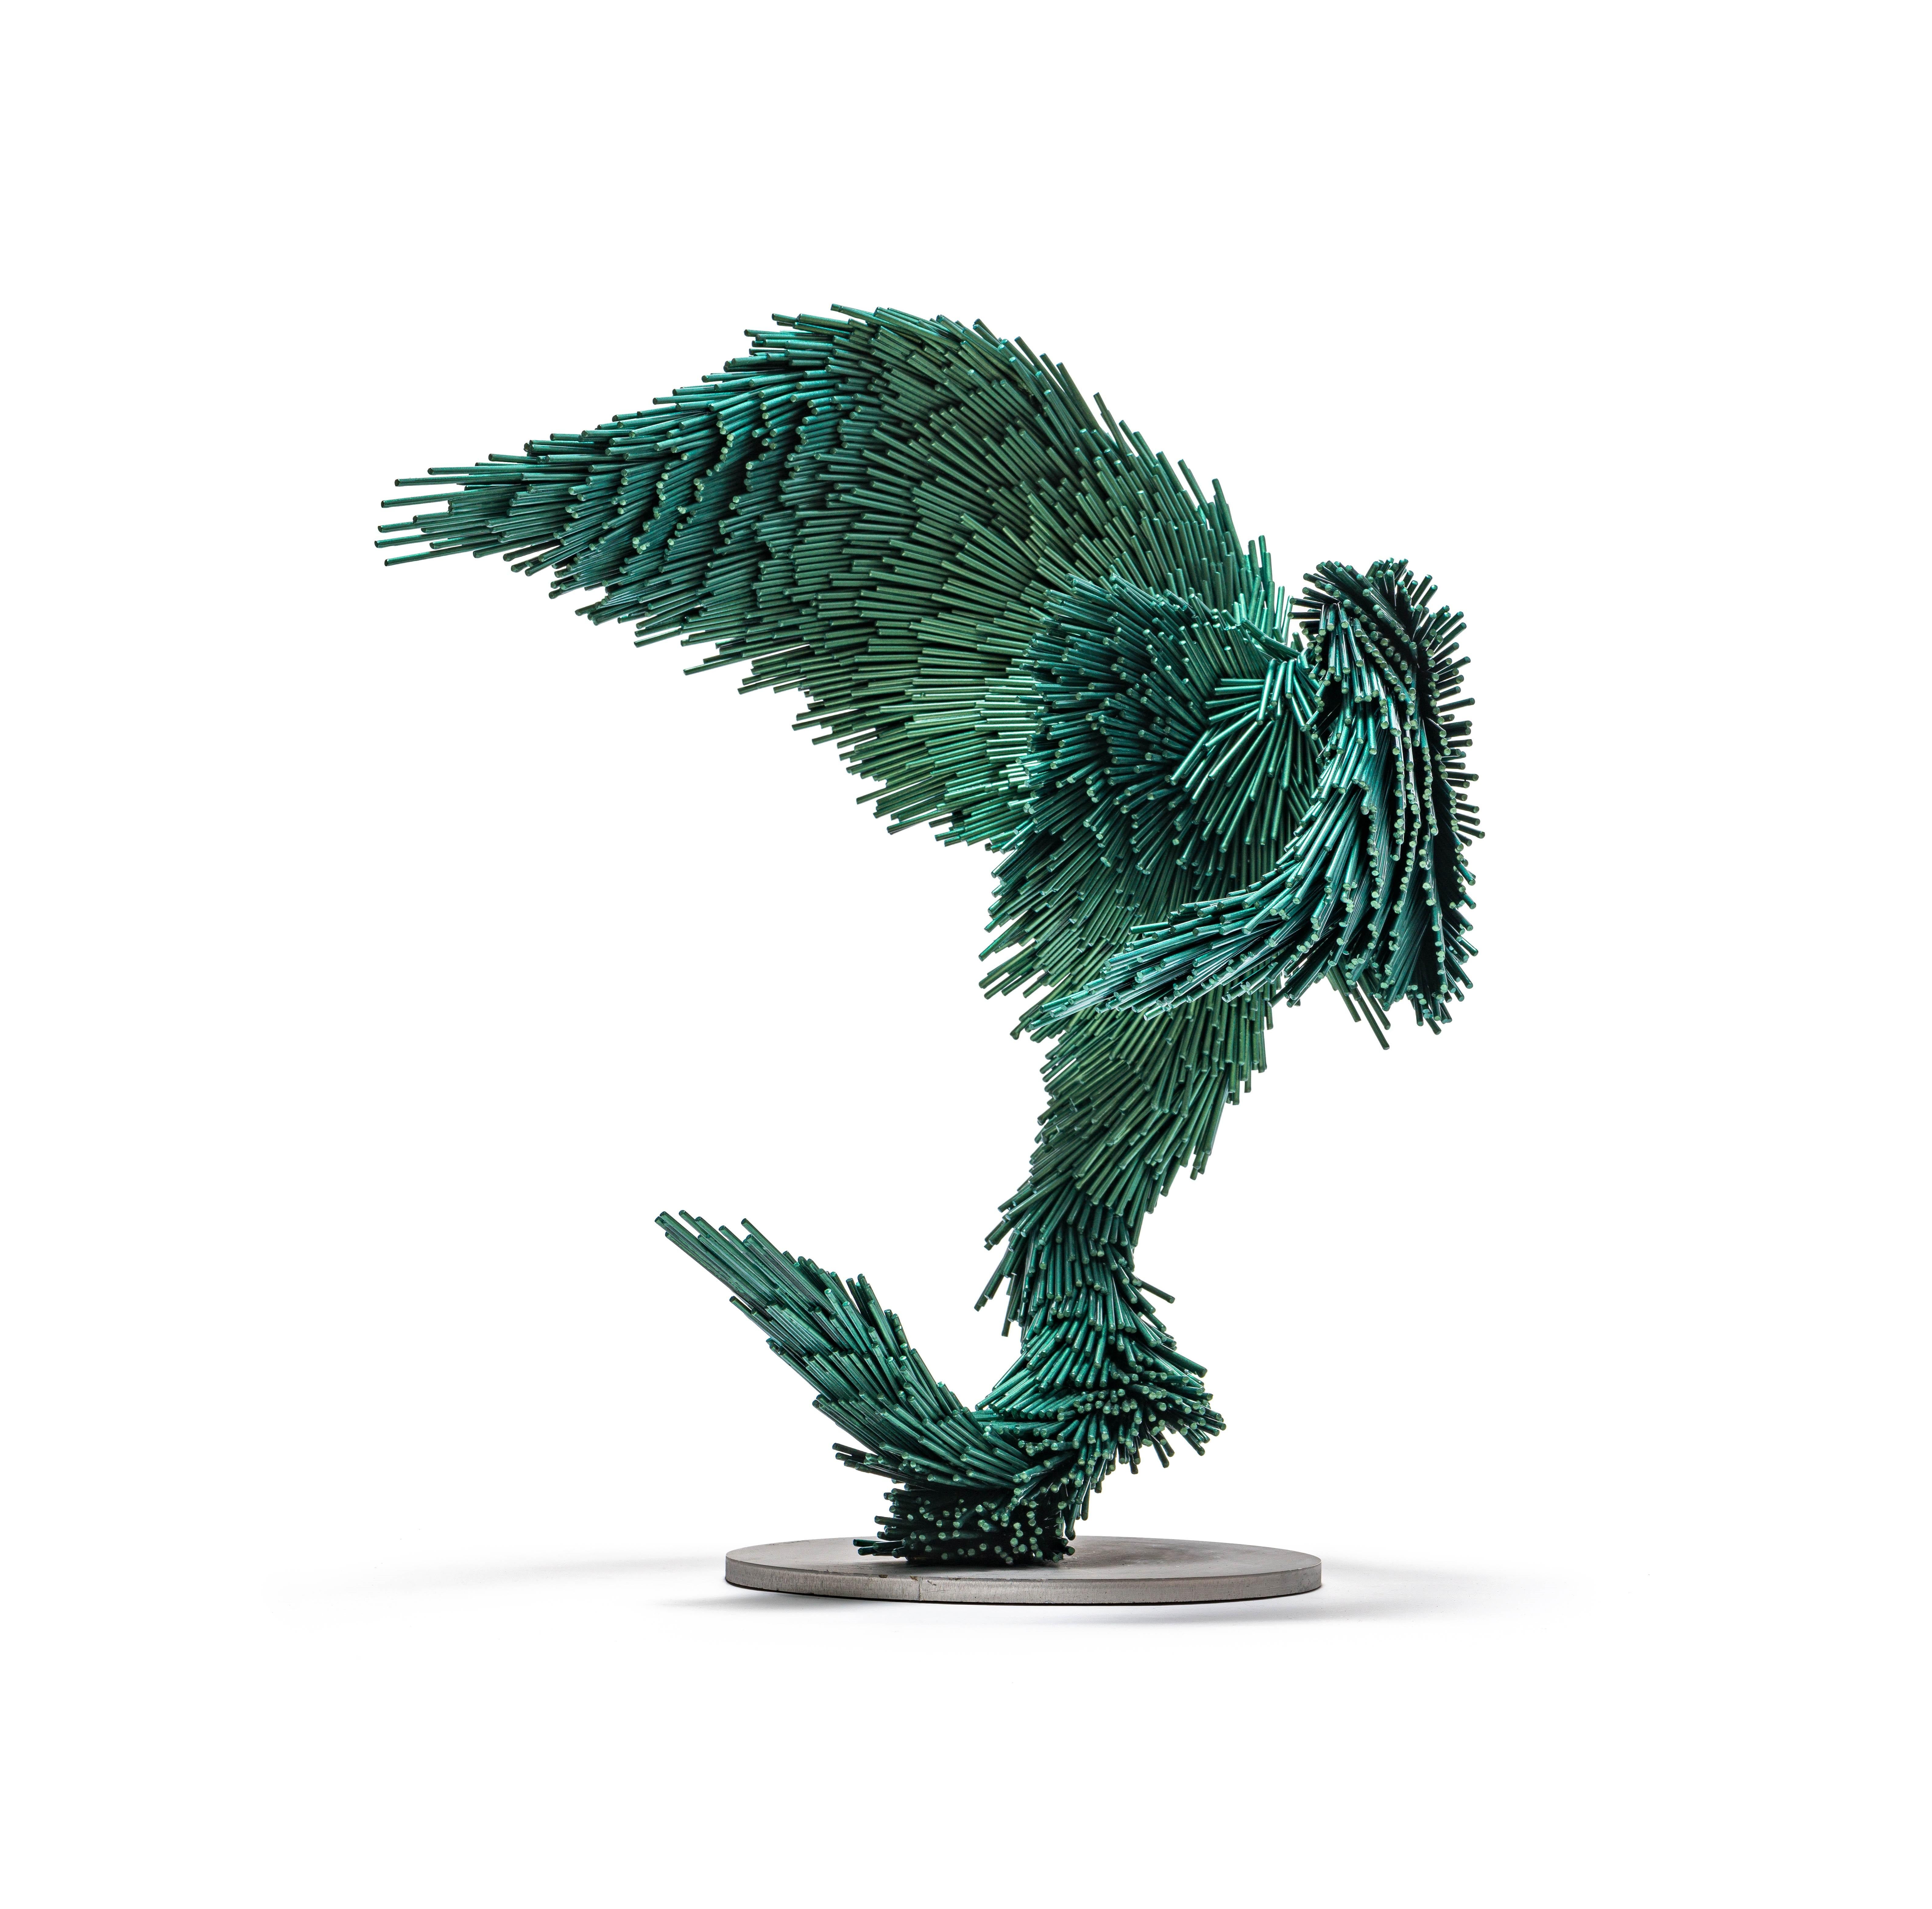 Green Magic Murmuration - Sculpture by Jake Michael Singer